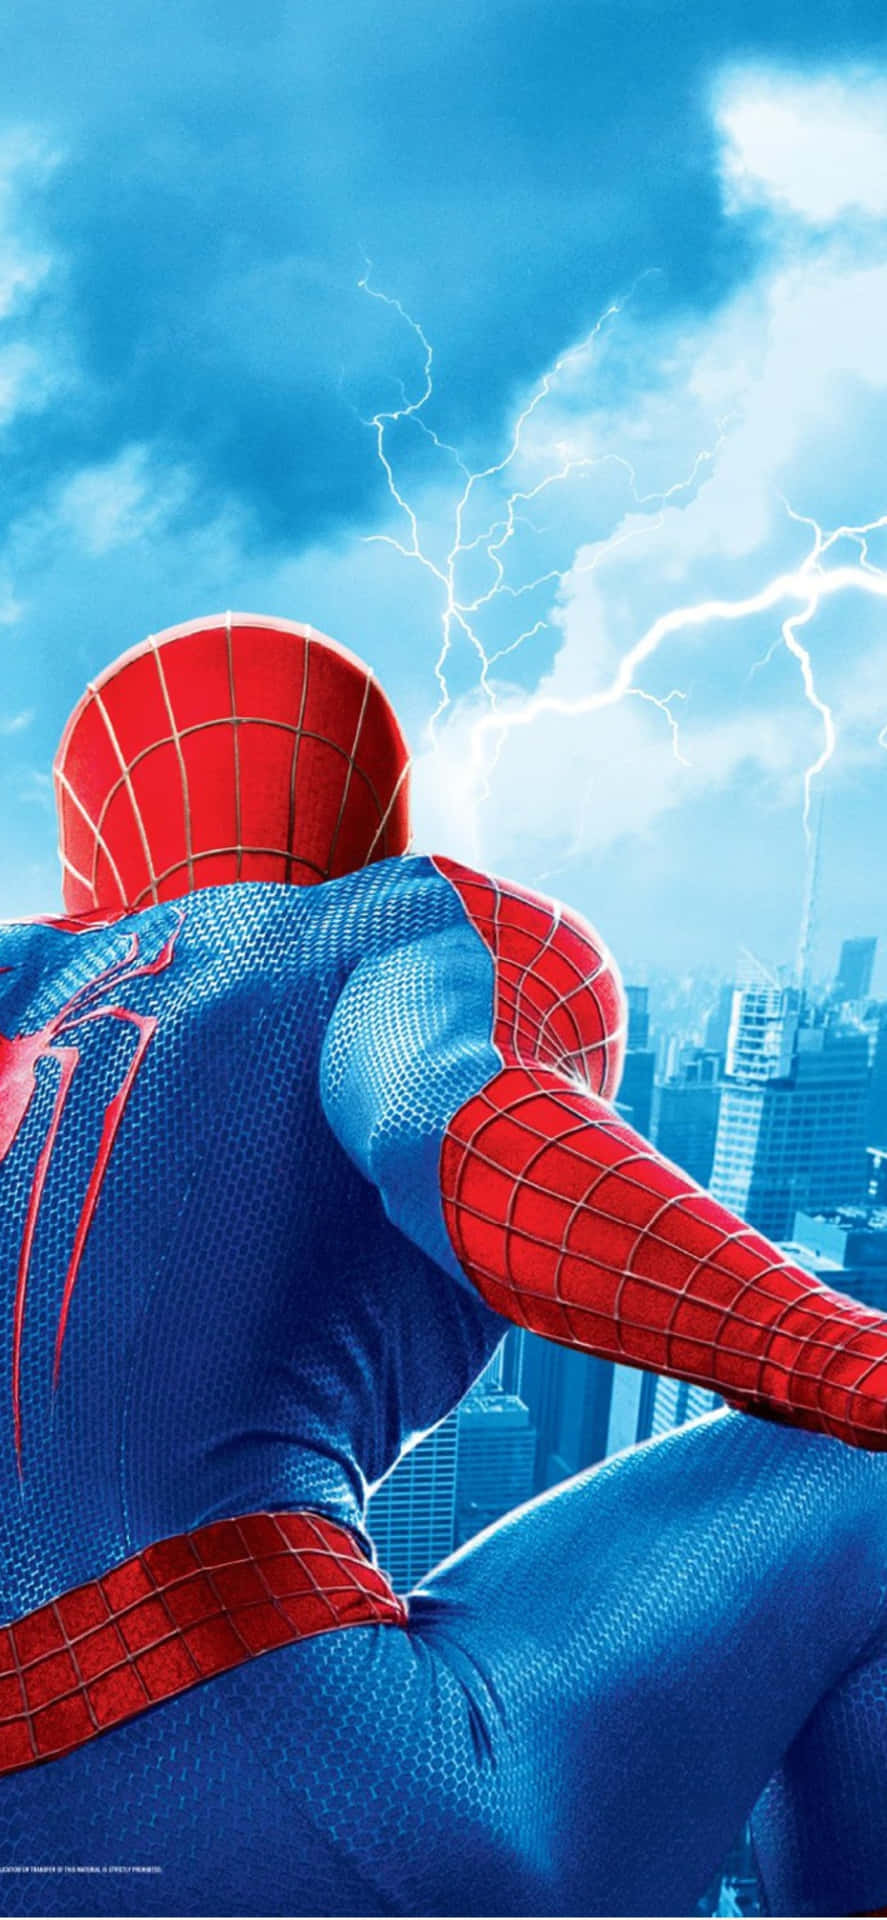 Upplevden Fantastiska Äventyret Med Spider Man På Din Iphone Idag! Wallpaper